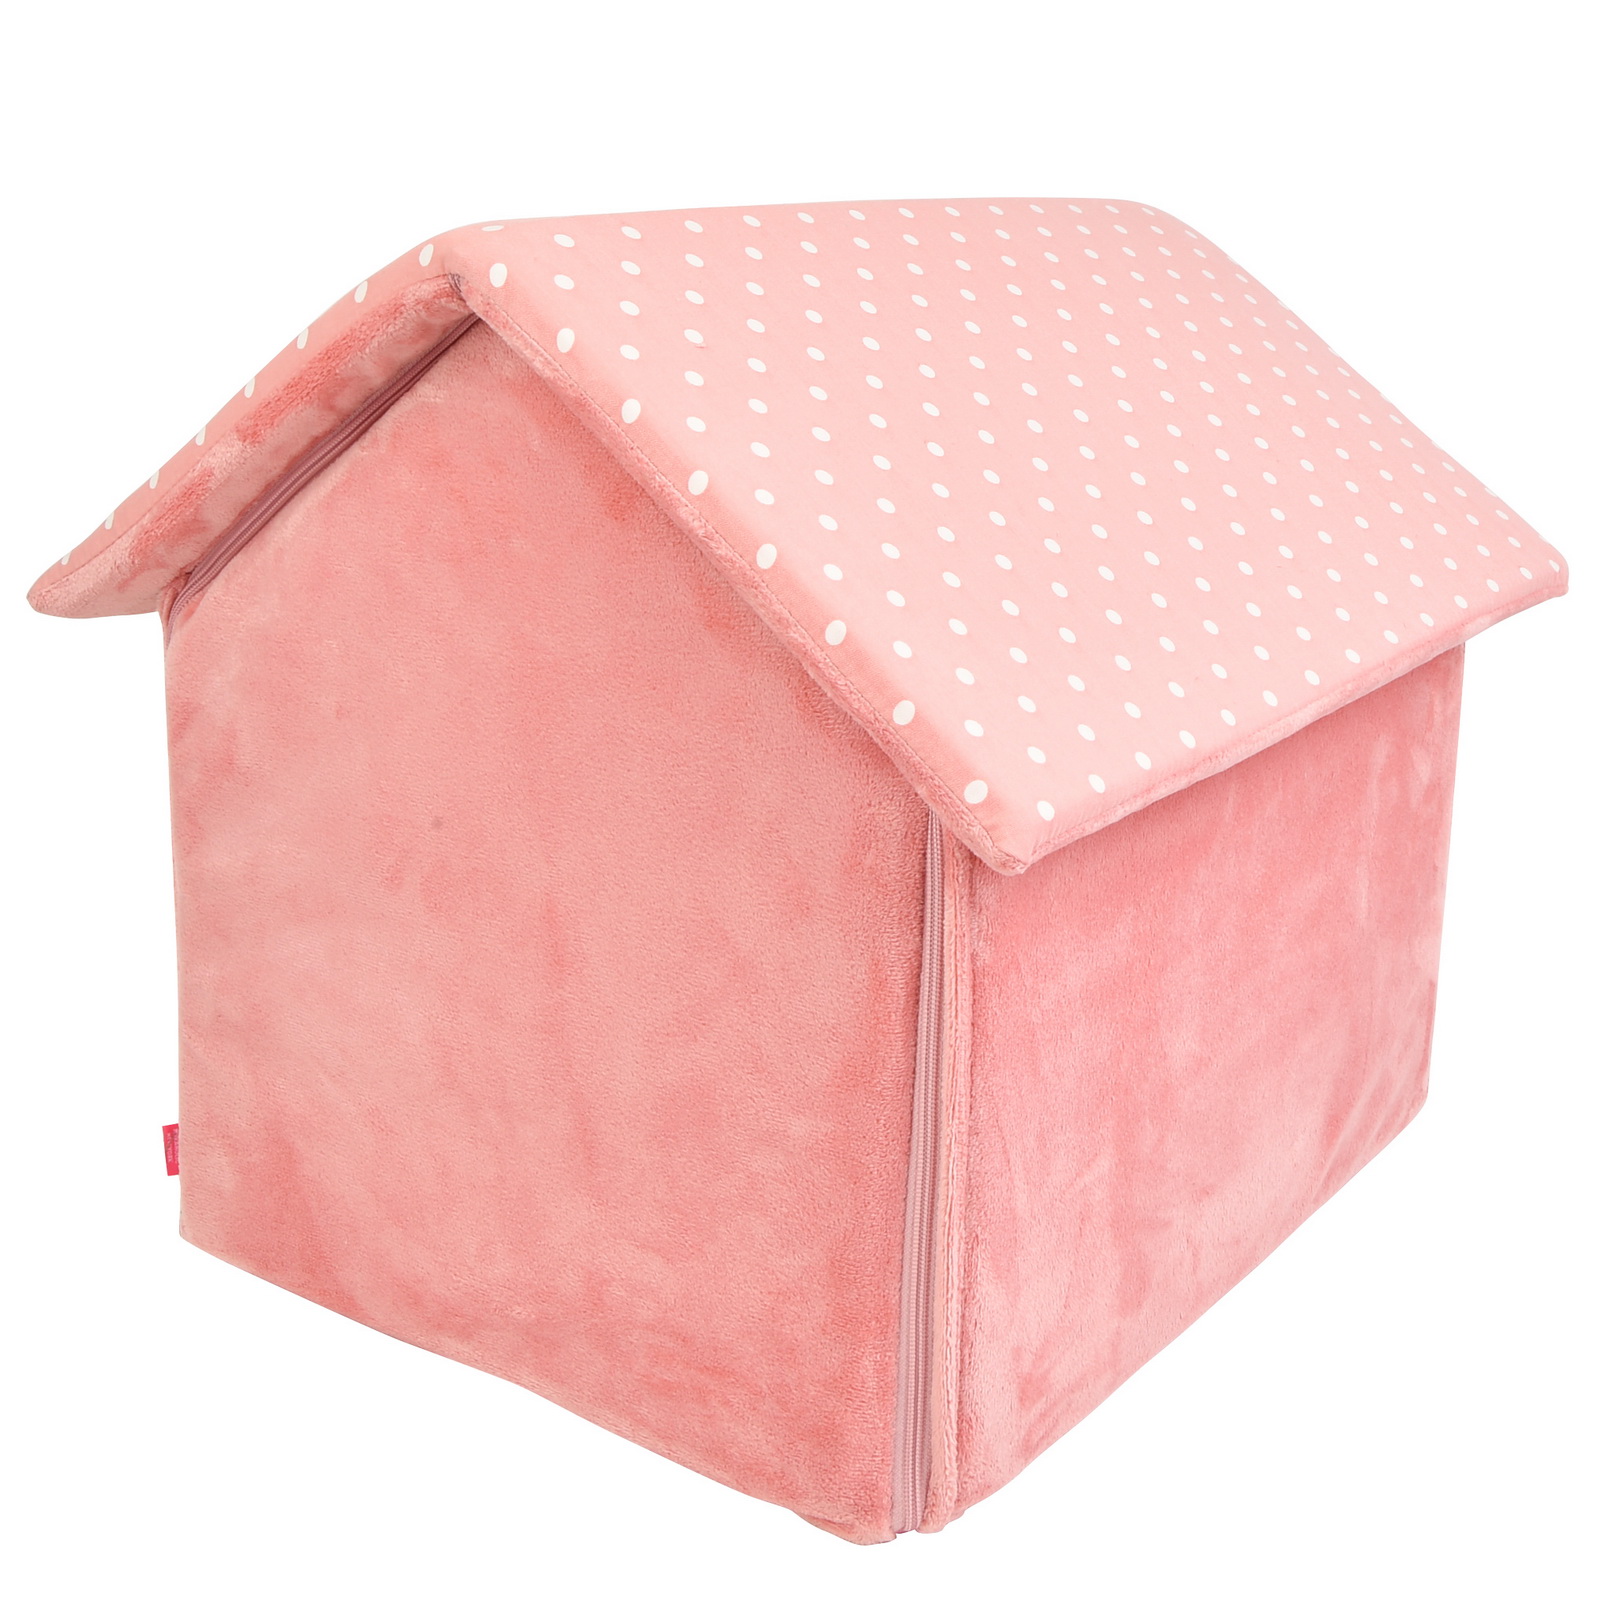 Домик для животных c косточкой PINKAHOLIC Paloma, розовый, 40х45х42см (Южная Корея)